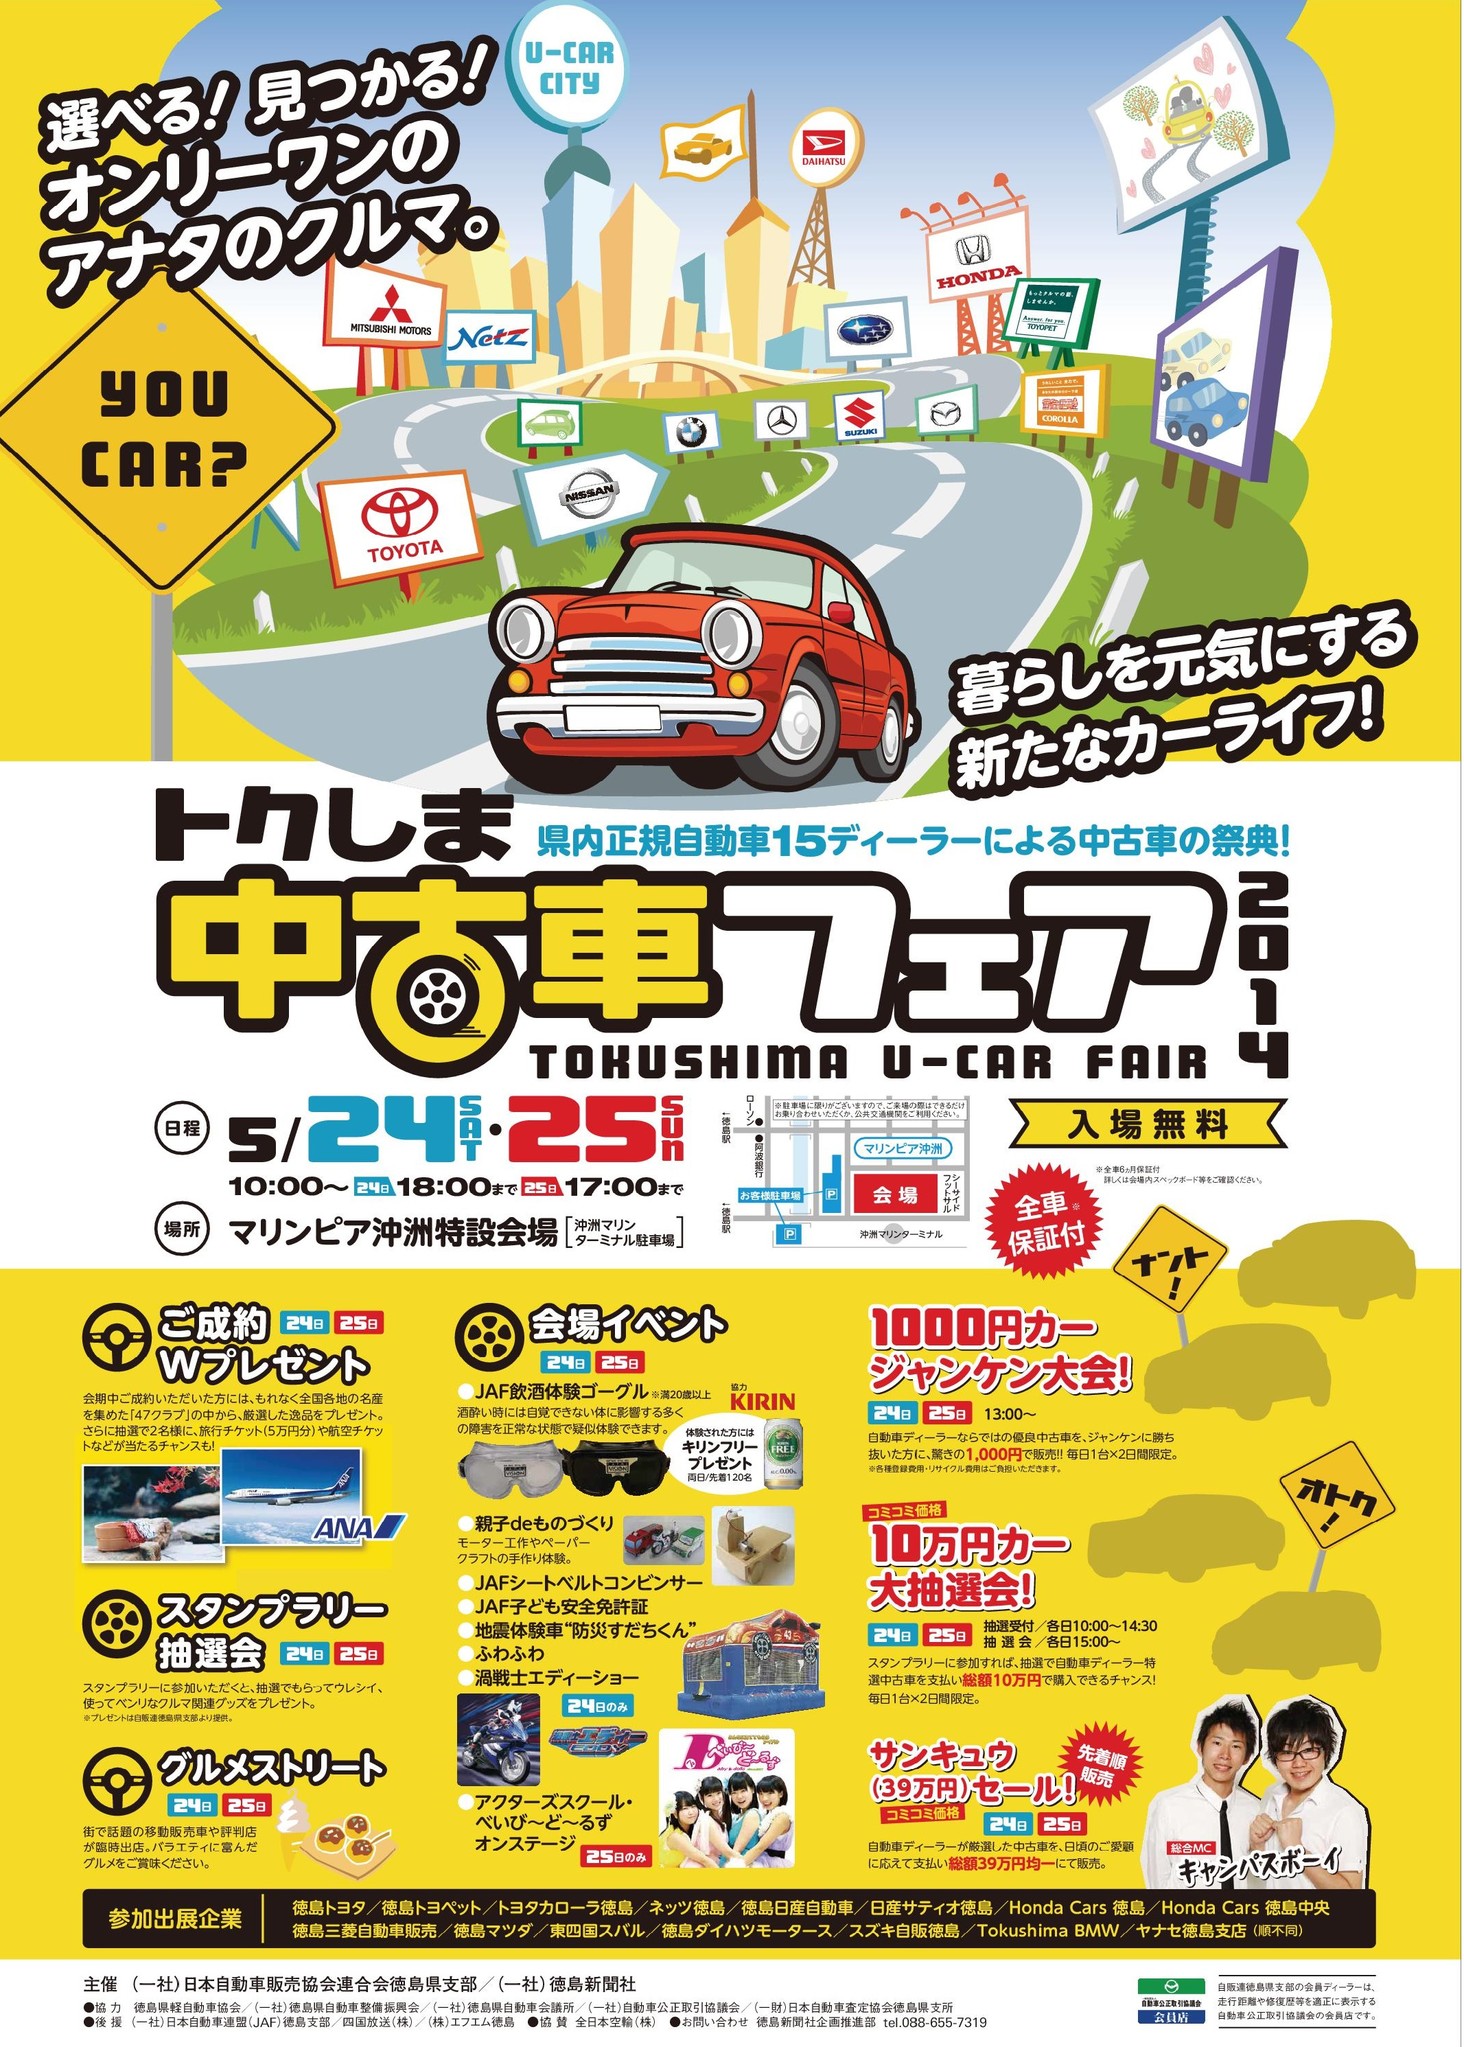 トクしま中古車フェア２０１４ 一般社団法人徳島新聞社のプレスリリース